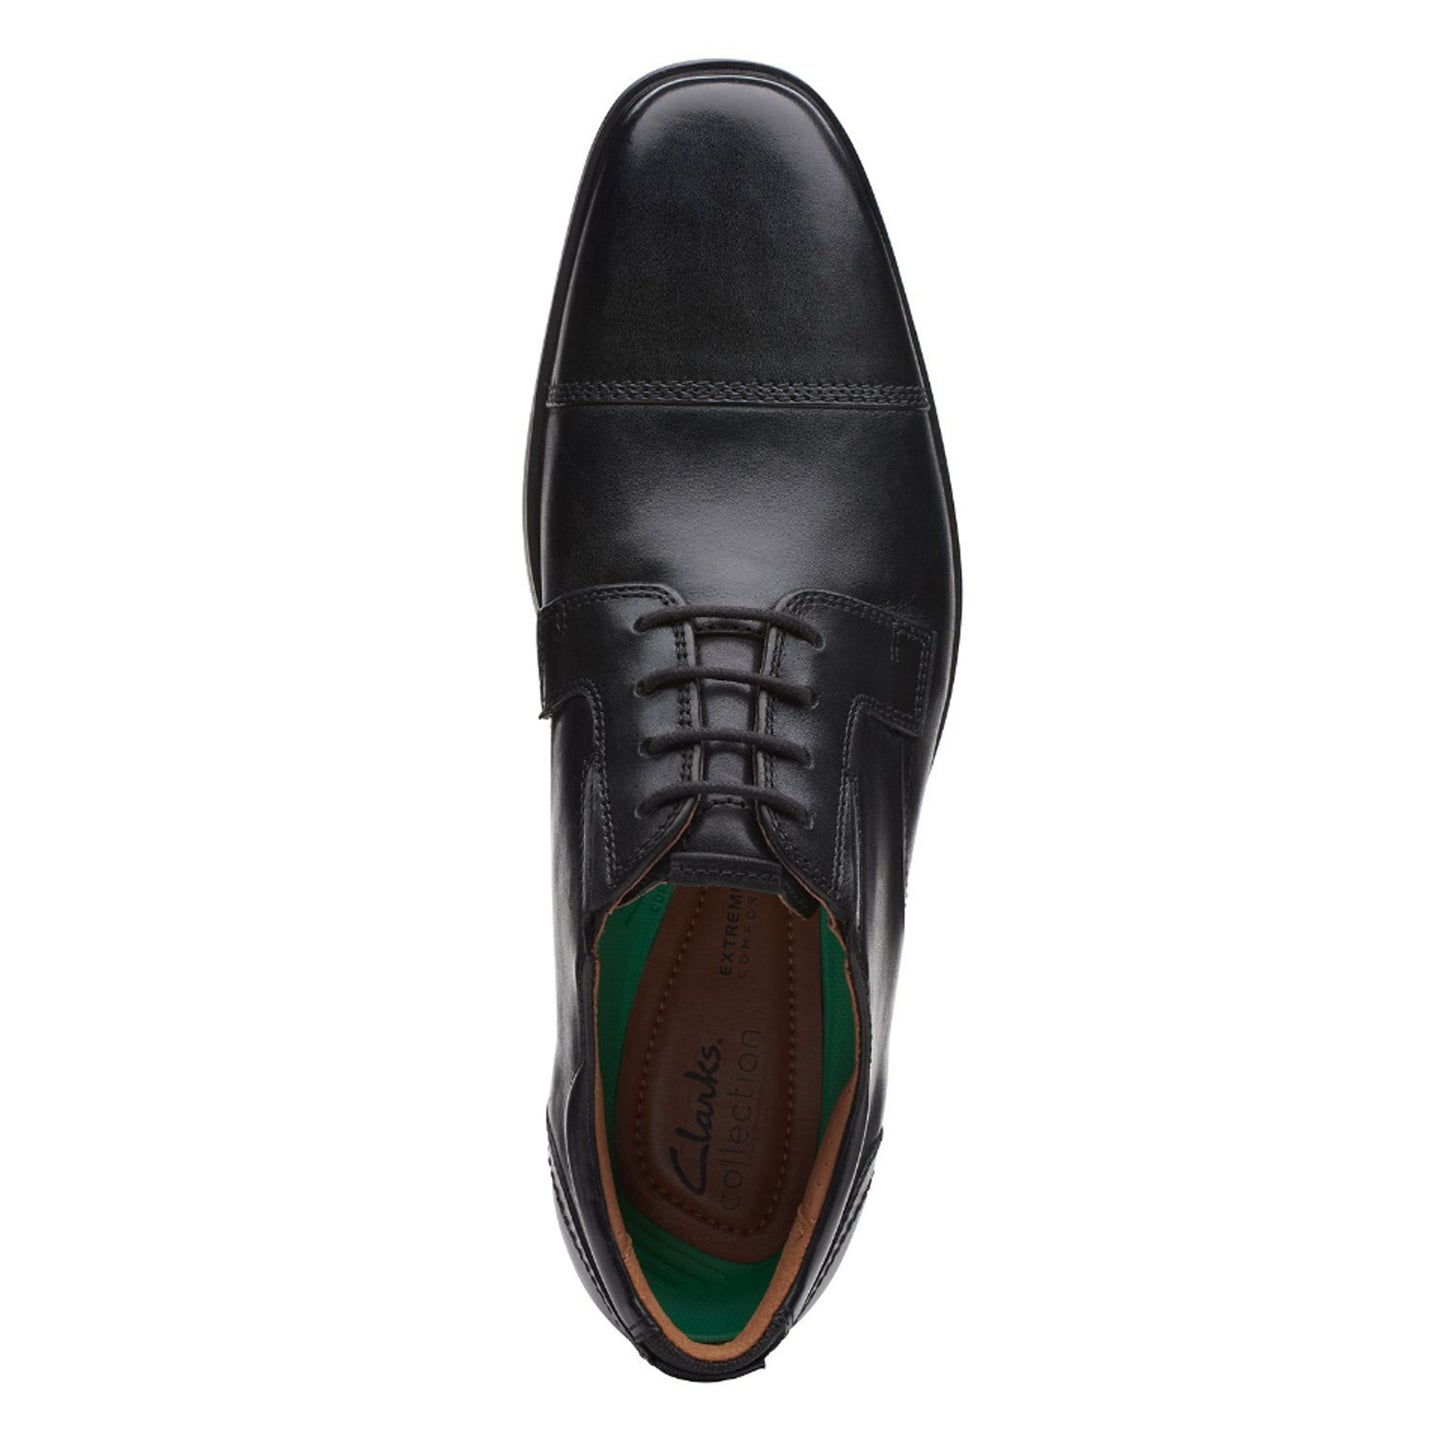 Peltz Shoes  Men's Clarks Clarkslite Cap Toe Oxford BLACK 26168244